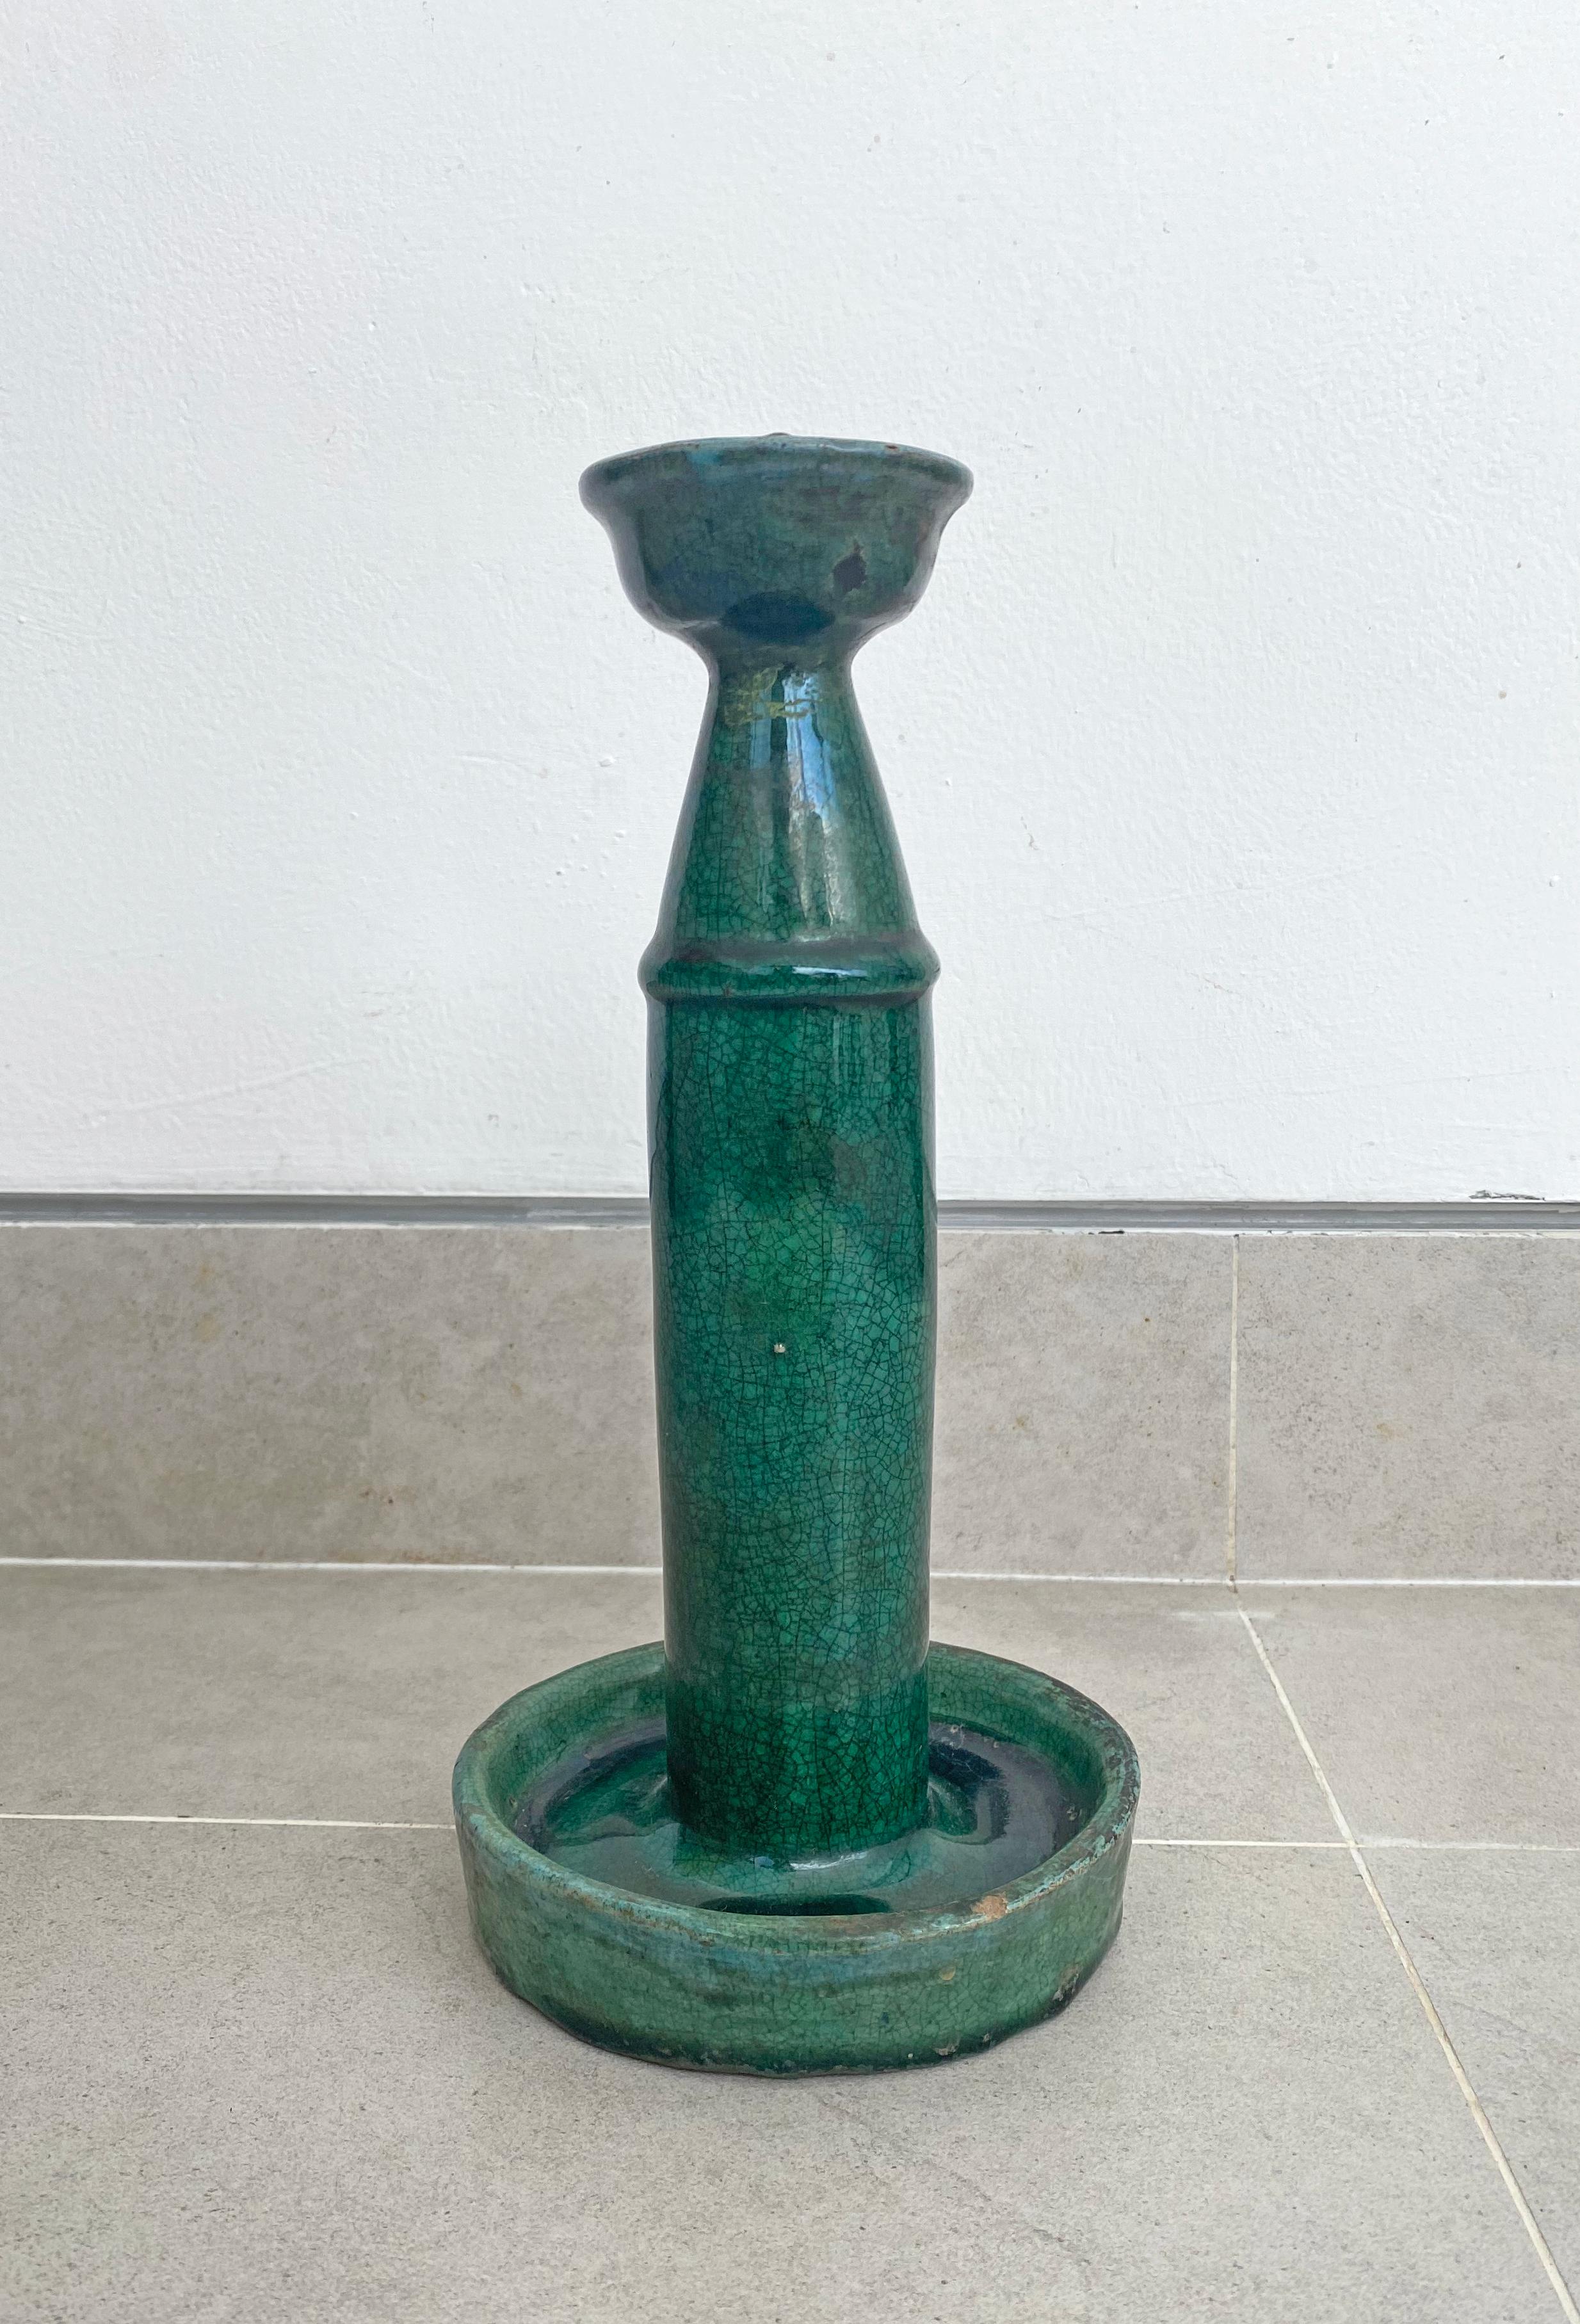 Cette lampe à huile en céramique Shiwan du début du 20e siècle présente une glaçure verte. La céramique de Shiwan est un style de poterie chinoise provenant du district de Shiwanzhen, près de Guangdong, en Chine. Un objet décoratif ou un bougeoir